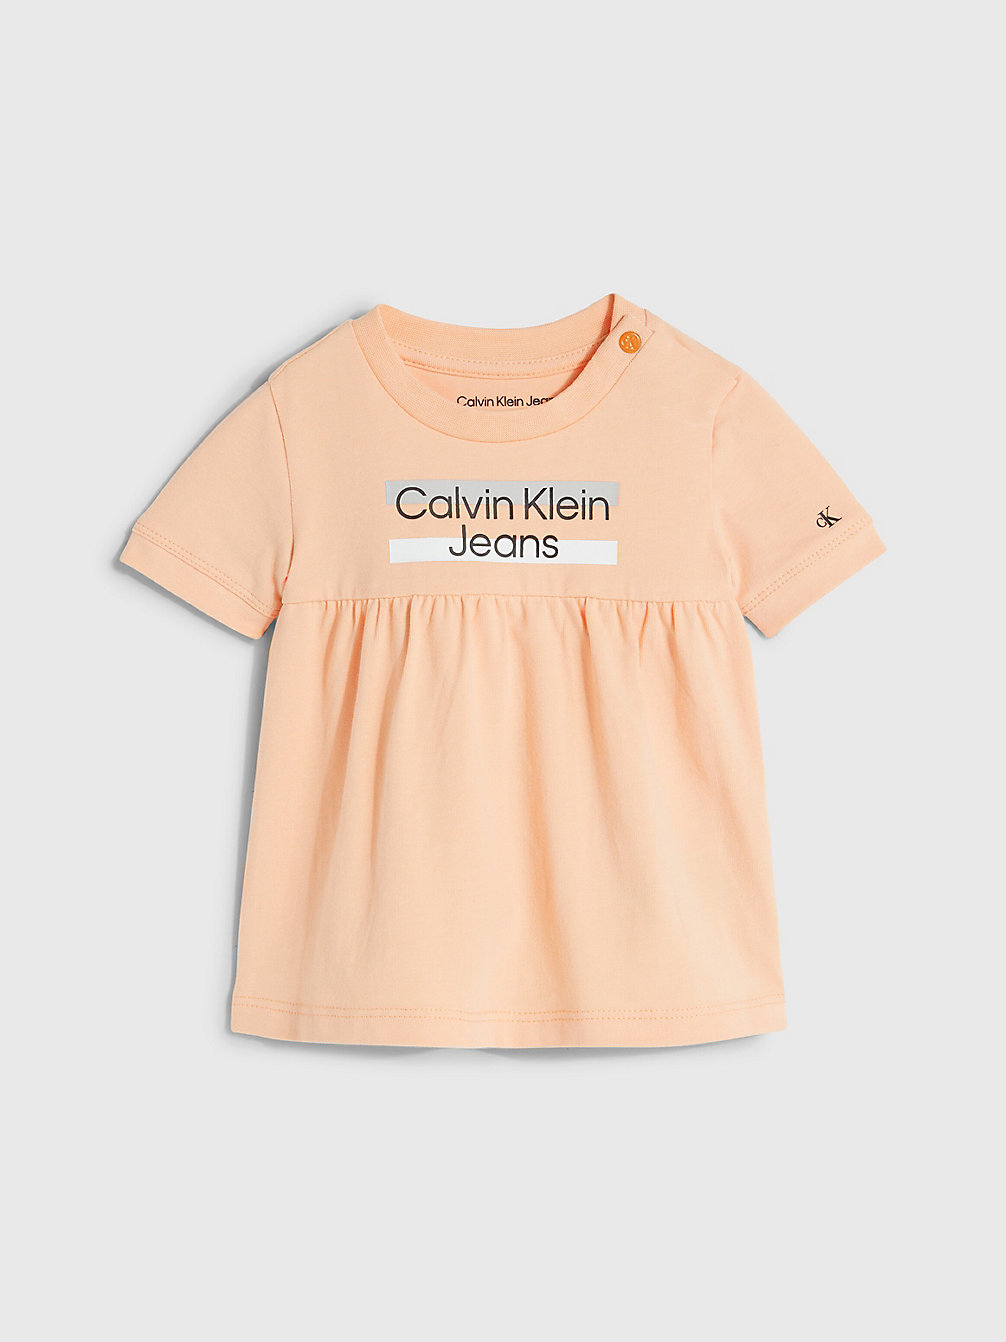 FRESH CANTALOUPE Newborn Jurk Met Logo undefined undefined Calvin Klein